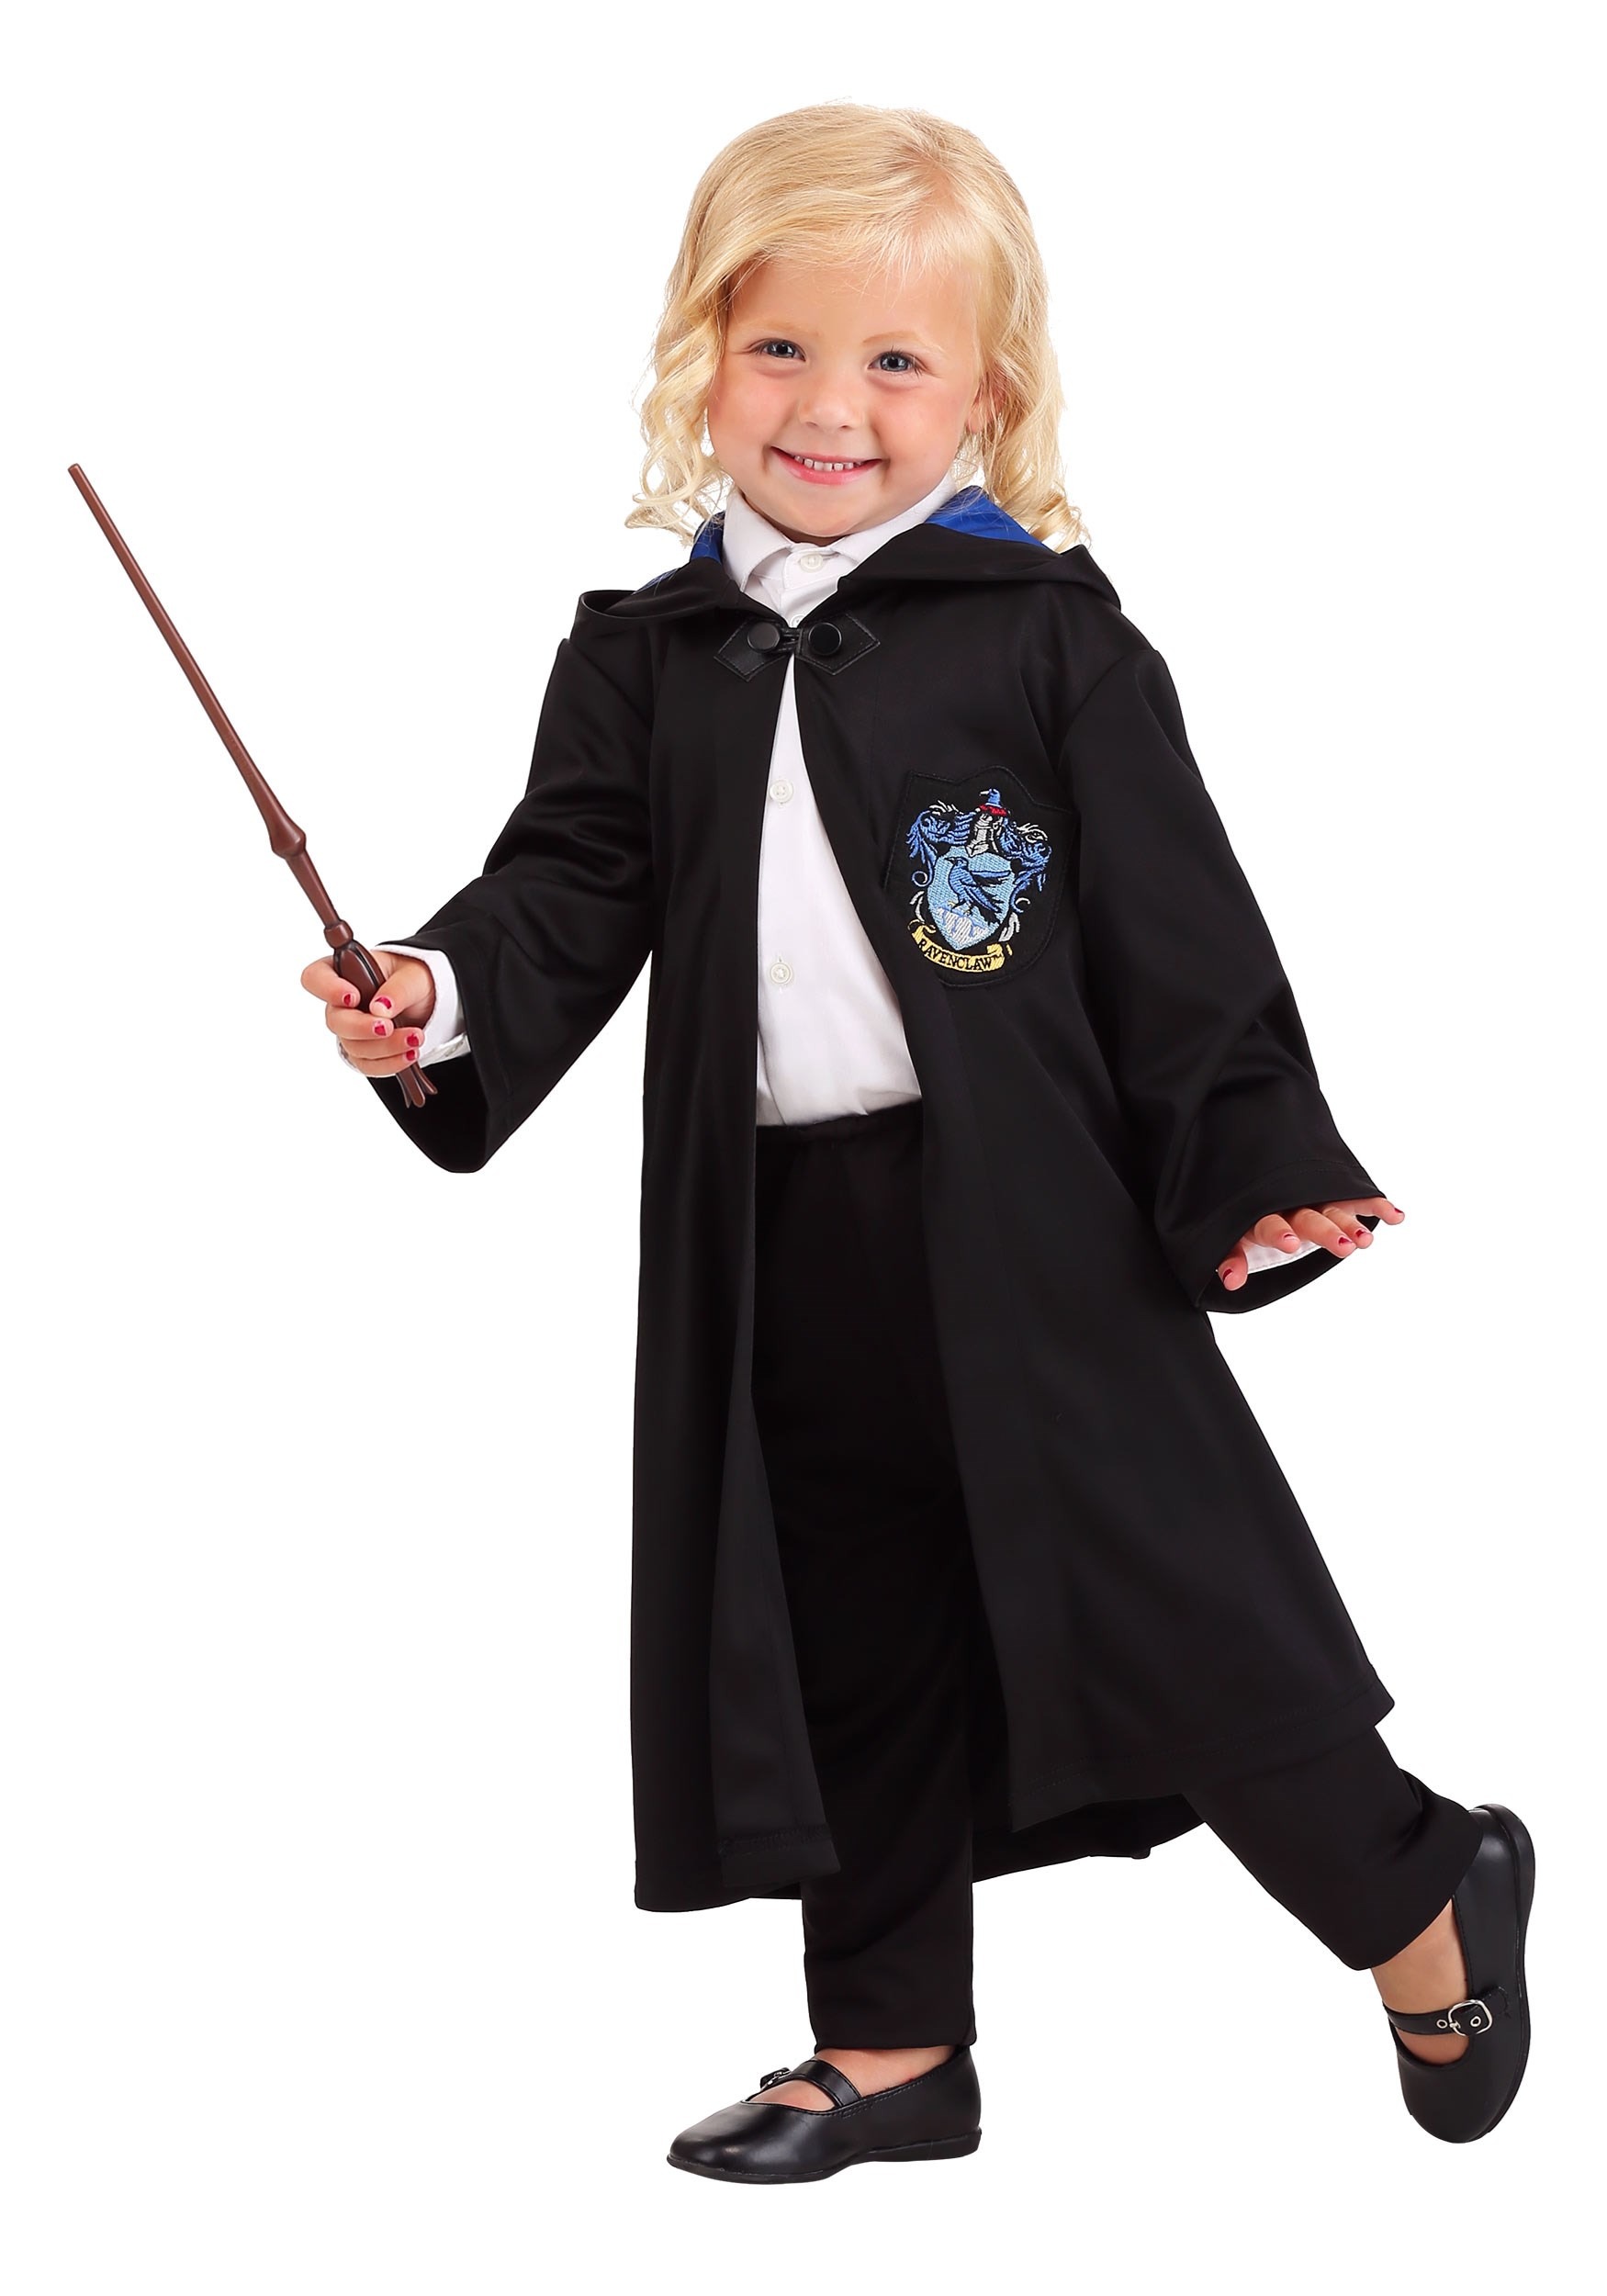 Vintage Hogwarts Slytherin Costume Robe for Kids